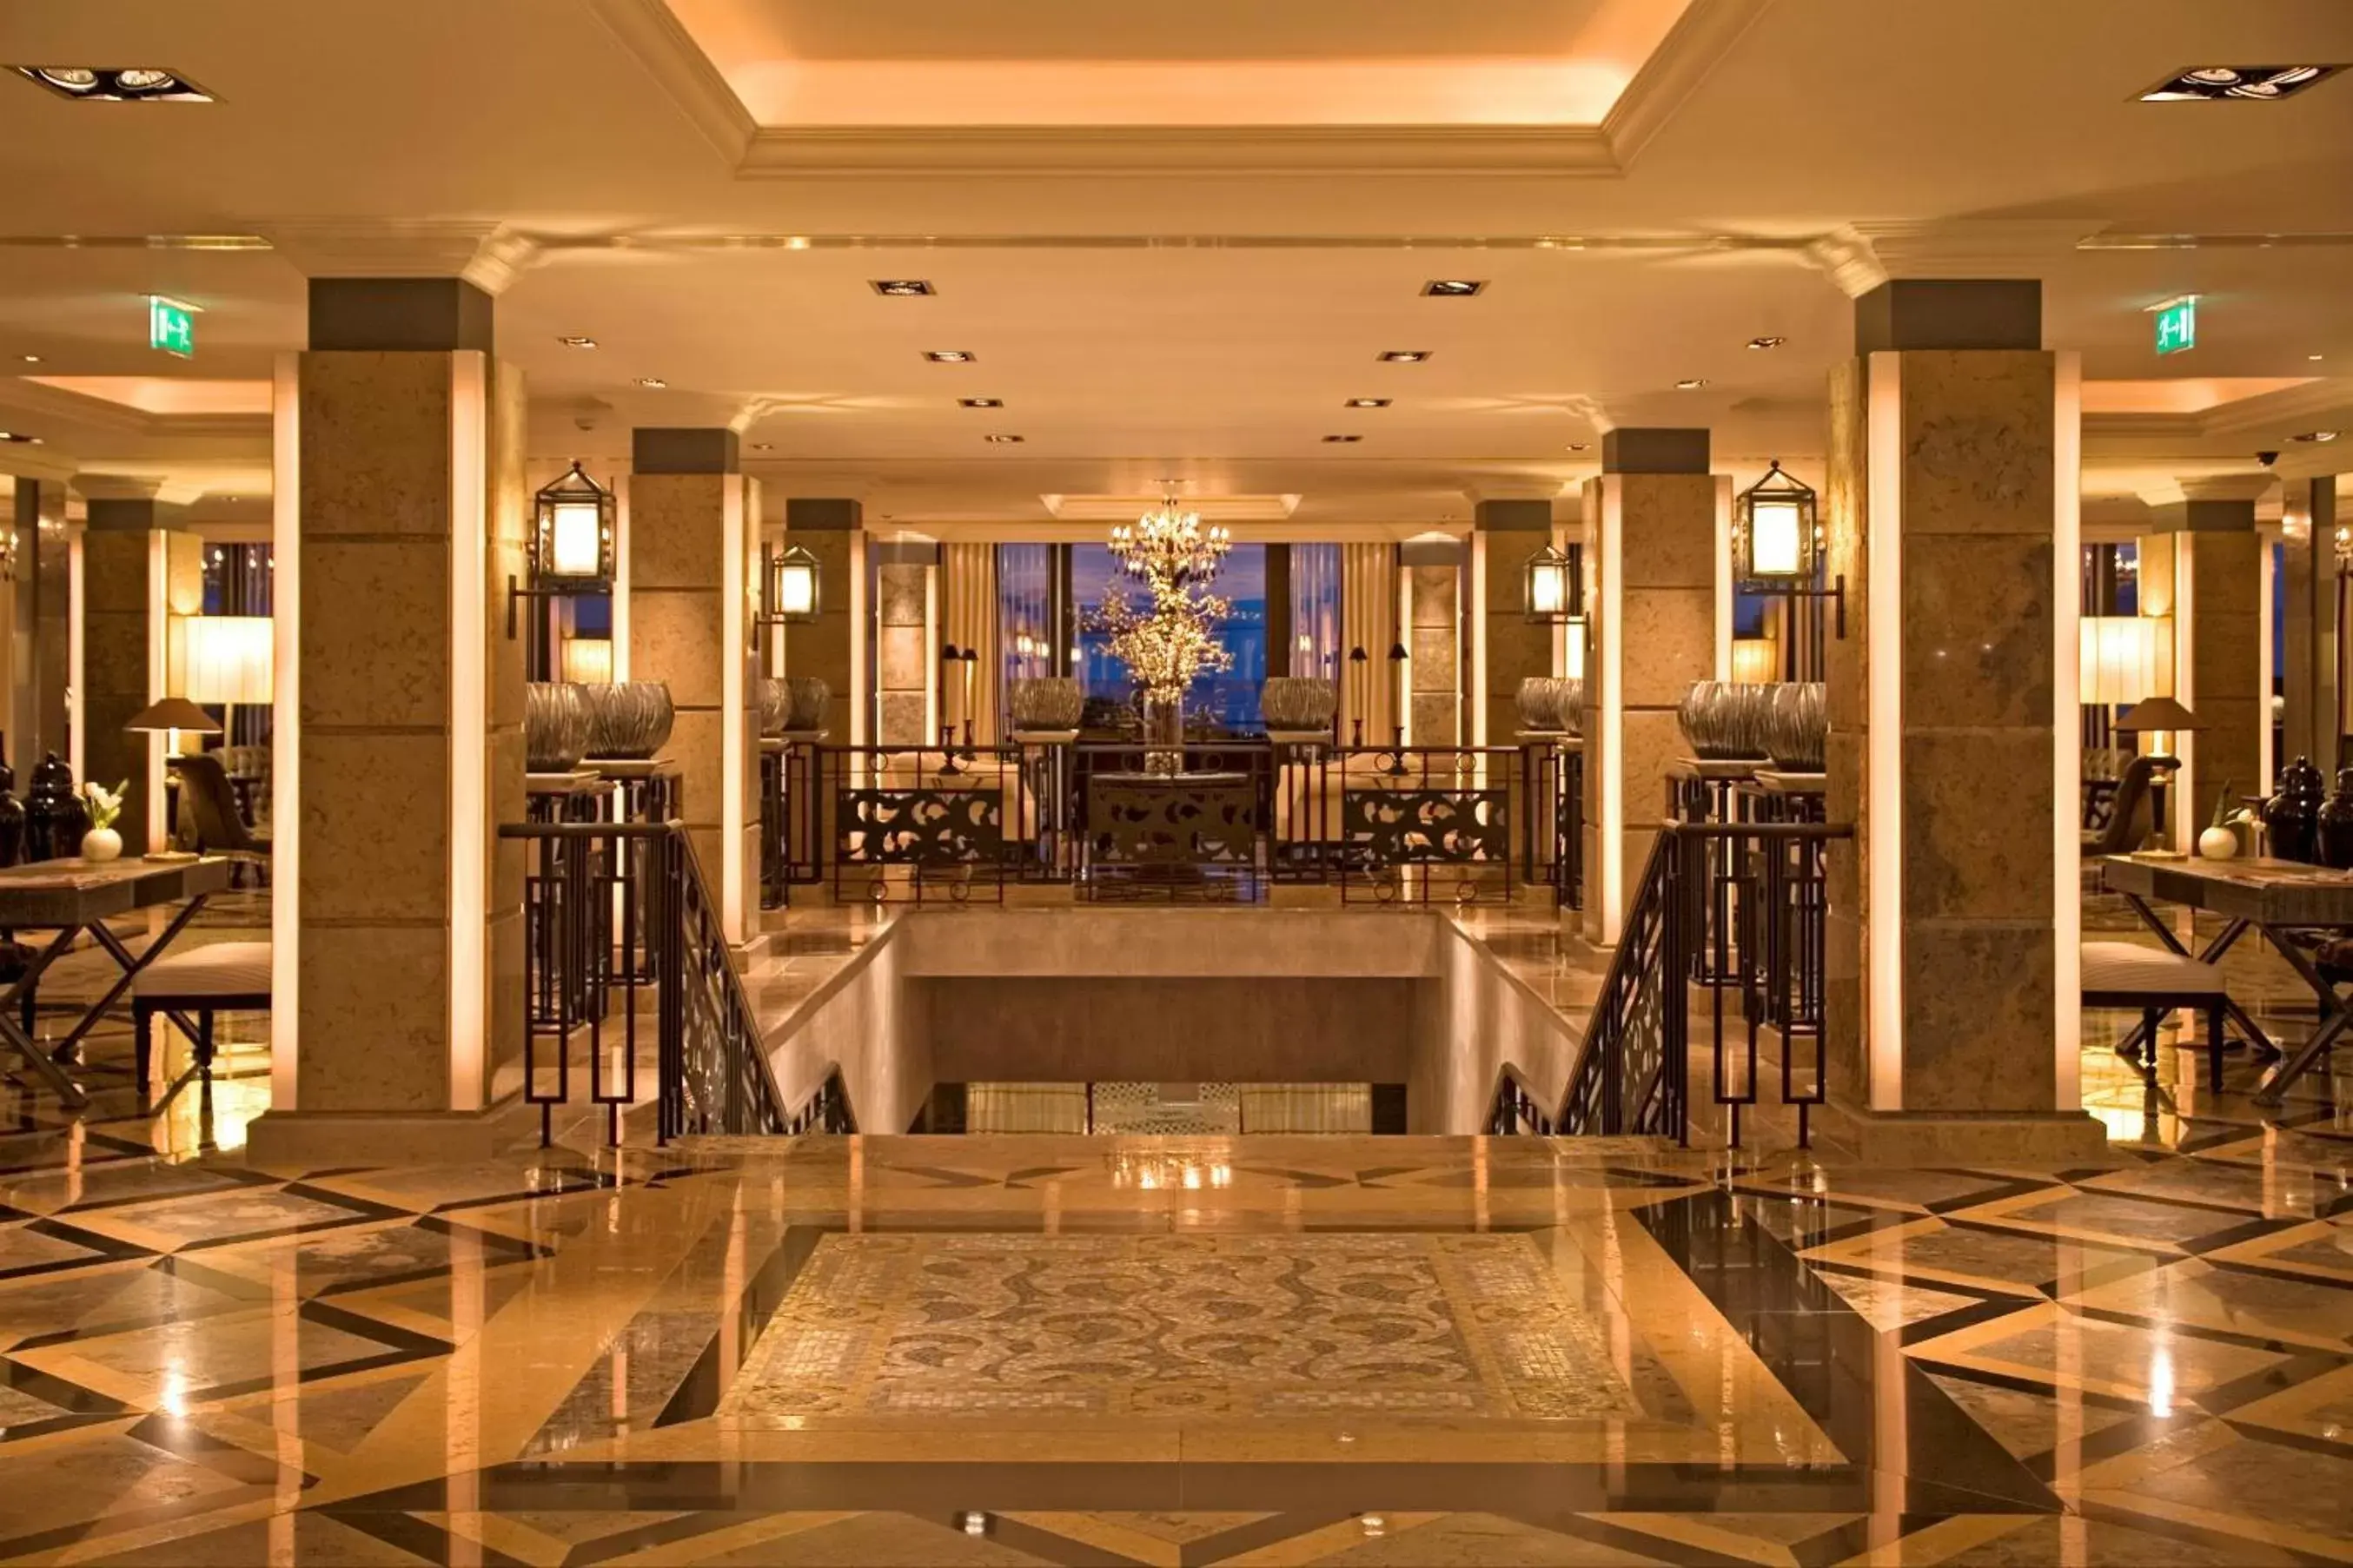 Lobby or reception in Grande Real Villa Itália Hotel & Spa